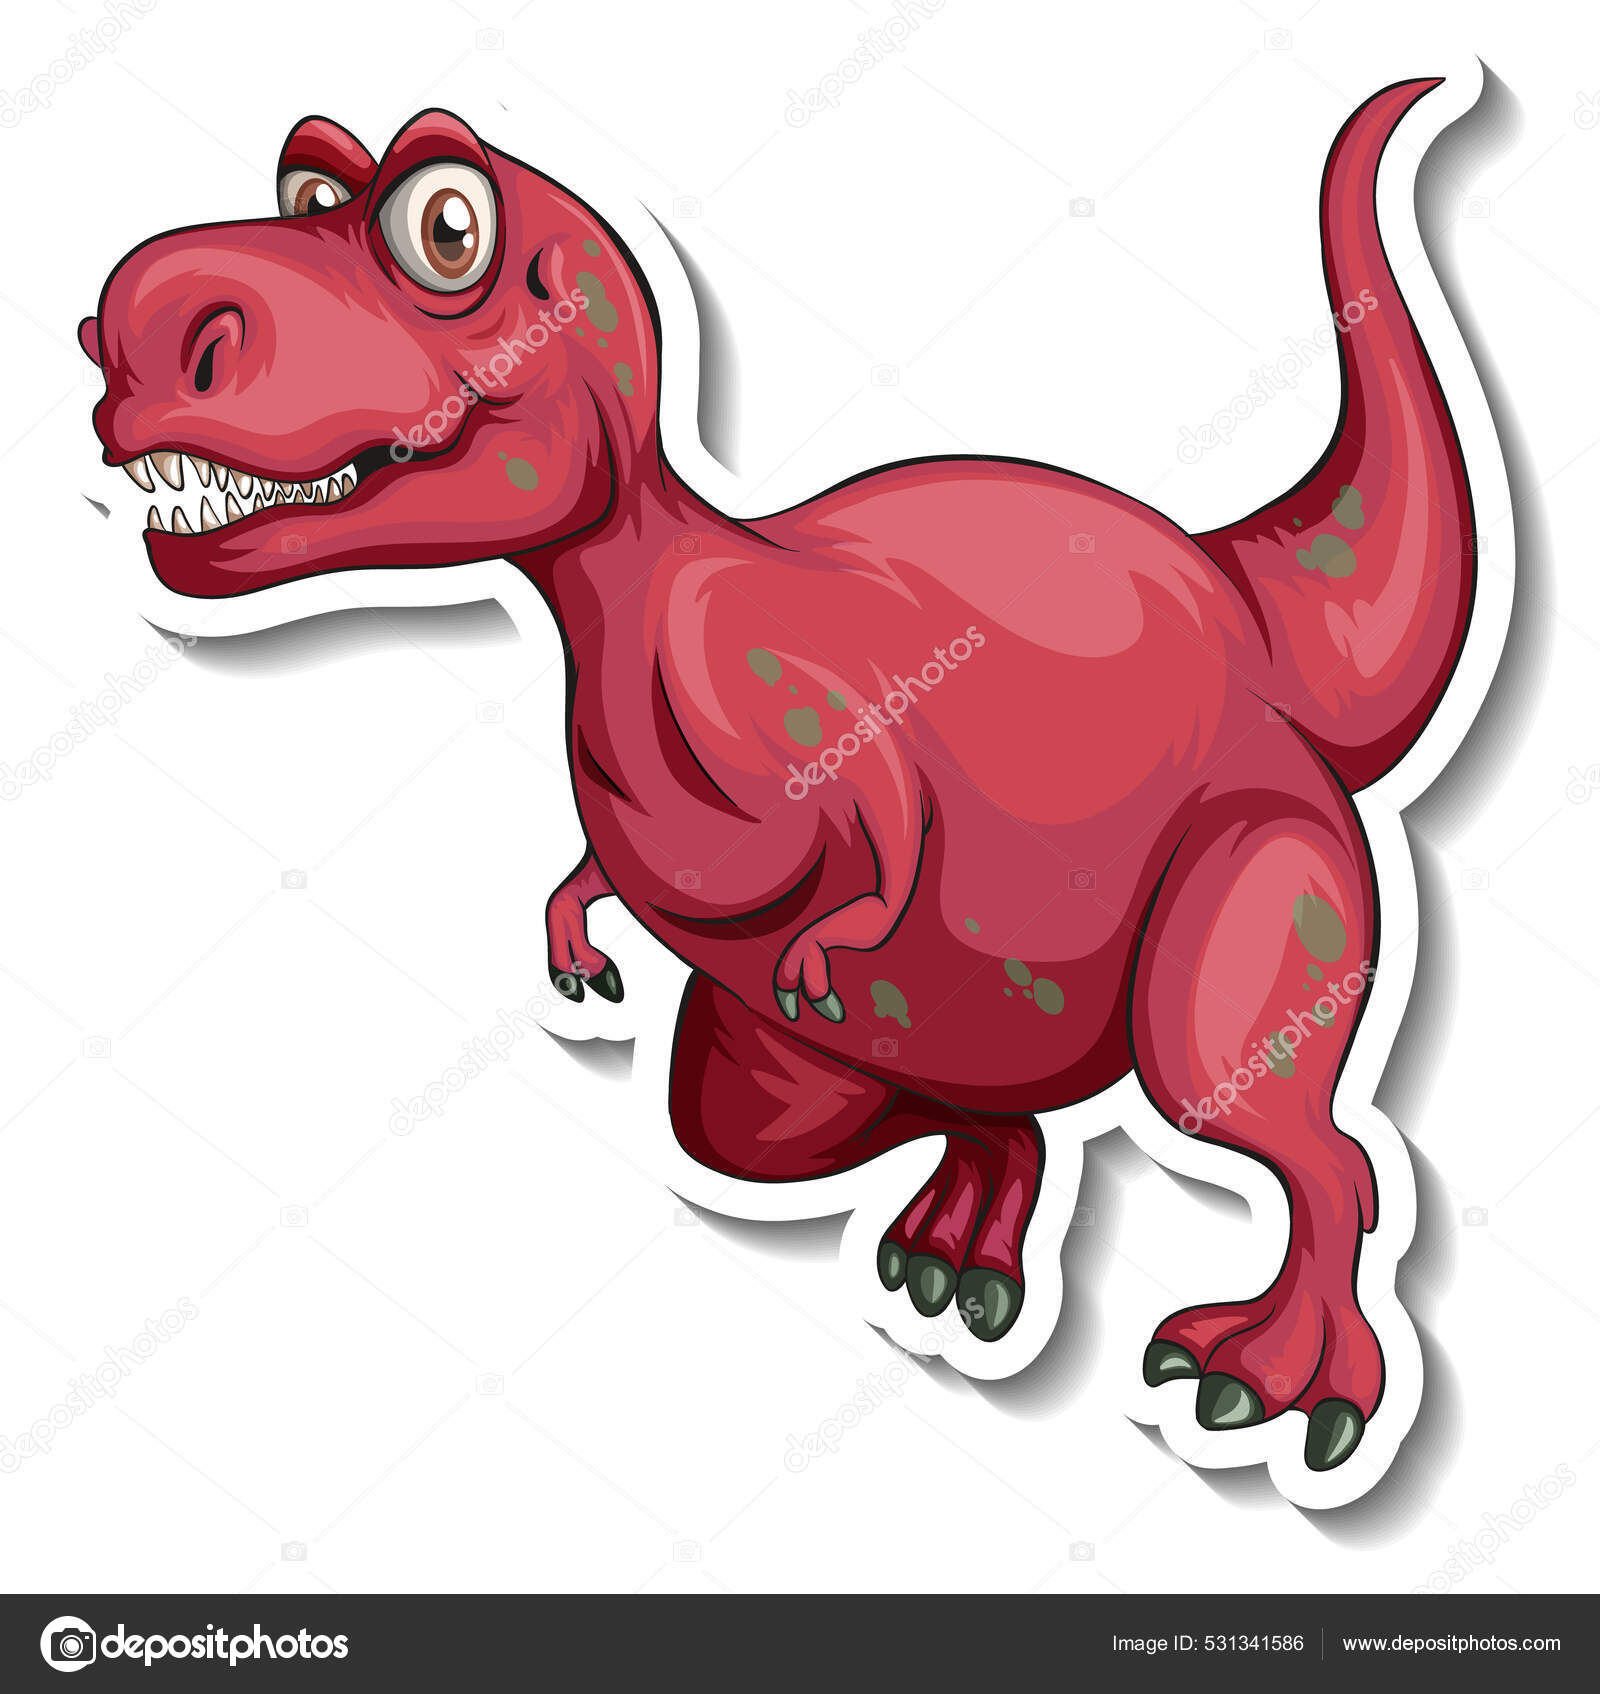 Personagem De Desenho Animado De Dinossauro Rosa-fofo Ilustração